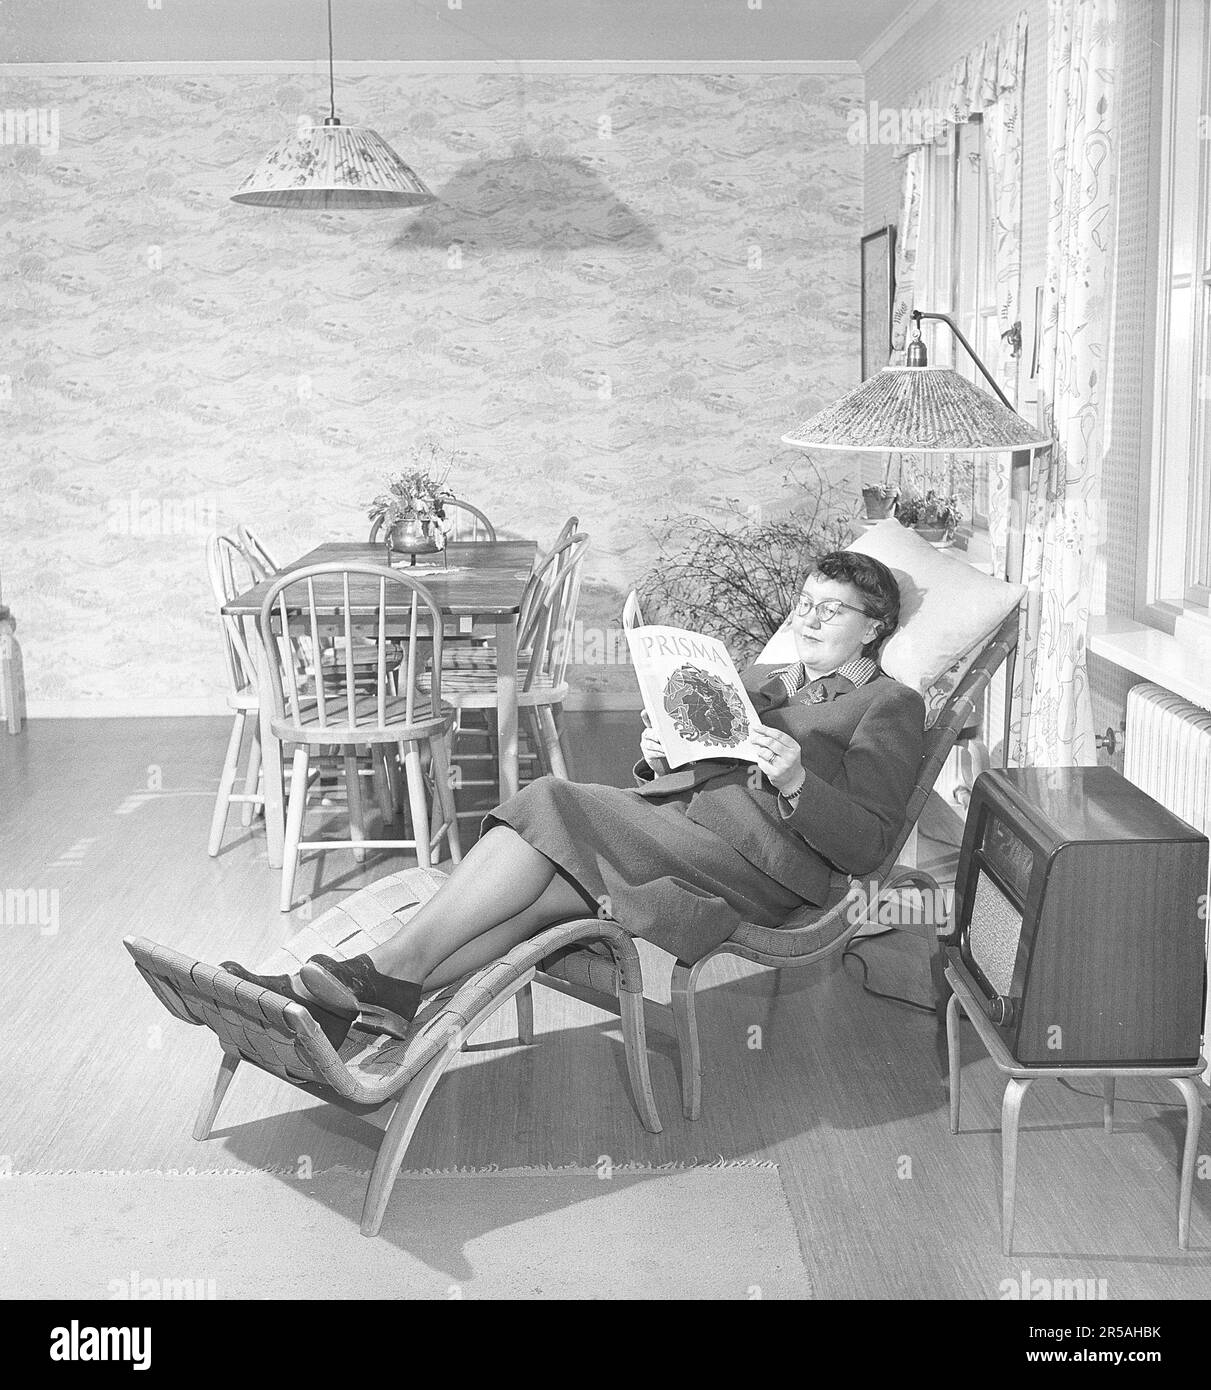 Arredamento di casa in passato. Un soggiorno dove una donna si trova nella classica poltrona Pernilla di Bruno Mathsson con sgabello e legge un giornale. Su un tavolo accanto è presente una radio. Le lampade hanno tende in tessuto pieghettato e nella stessa sala anche un tavolo da pranzo con sedie abbinate. Svezia 1950. Kristoffersson rif AX79-3 Foto Stock